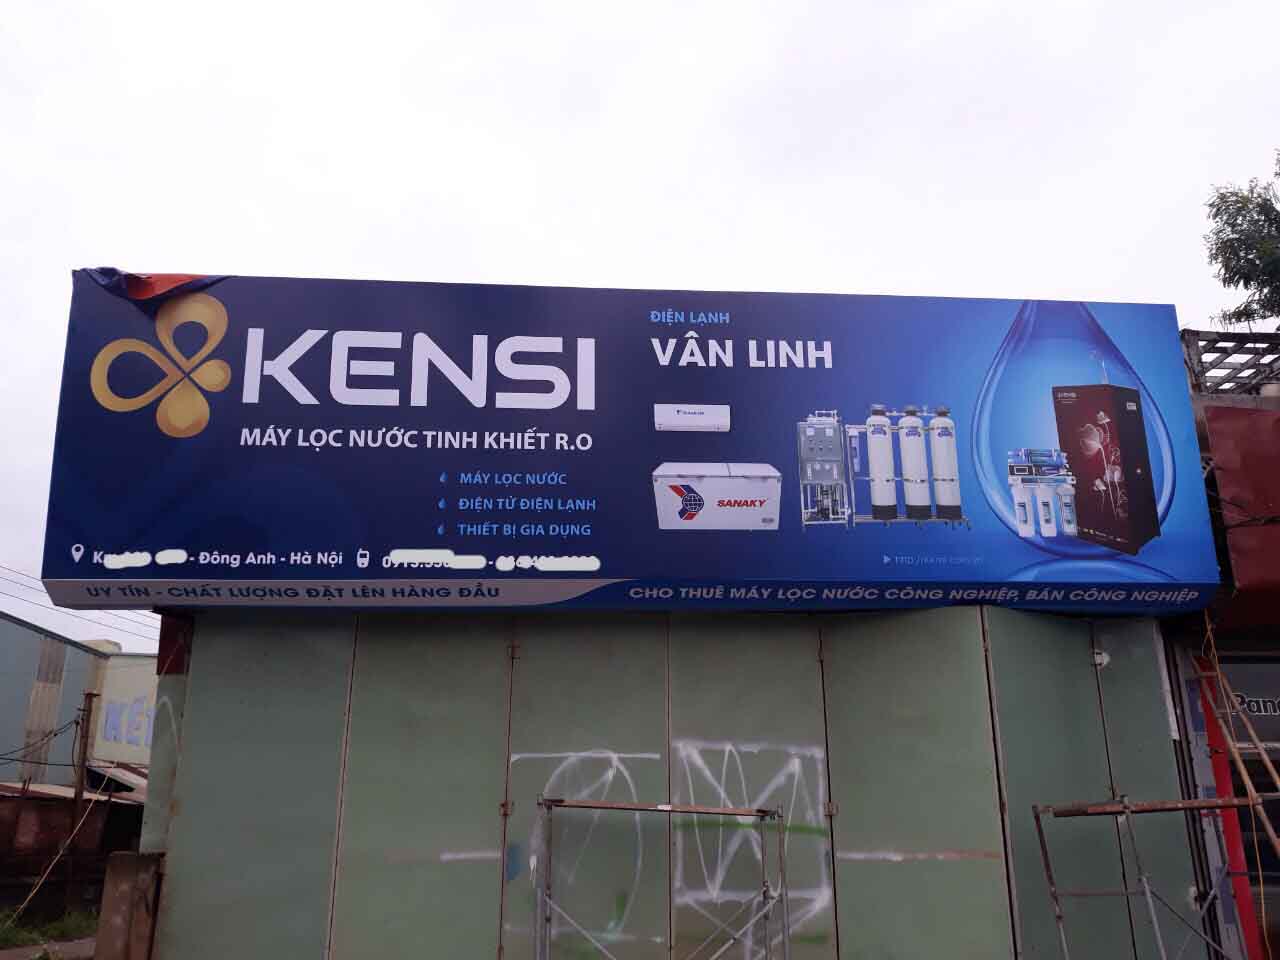 Biển hiệu Kensi quảng cáo ngoài trời tại các đại lý phân phối bán hàng chính hãng của Kensi trên khắp cả nước